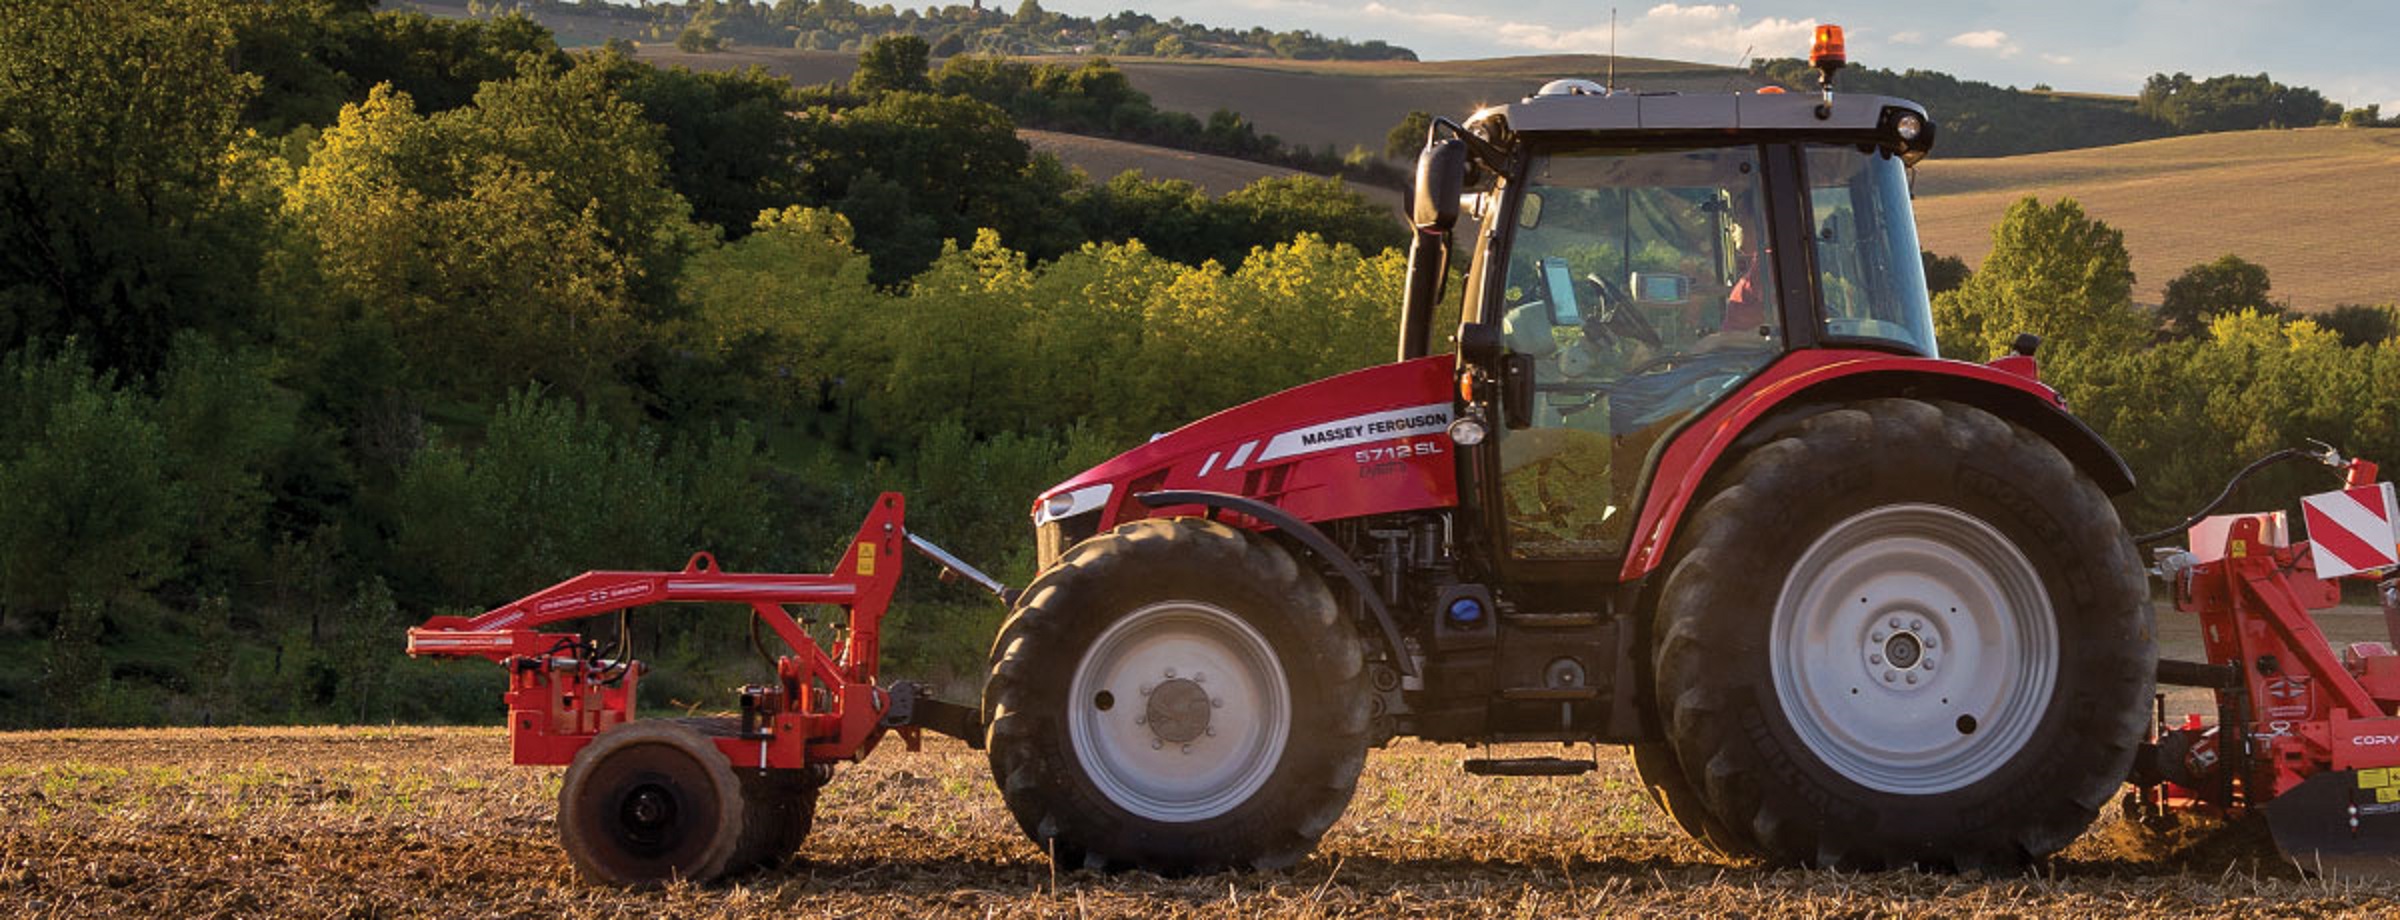 Massey Ferguson presenta potente tractor de alto rendimiento y tecnología